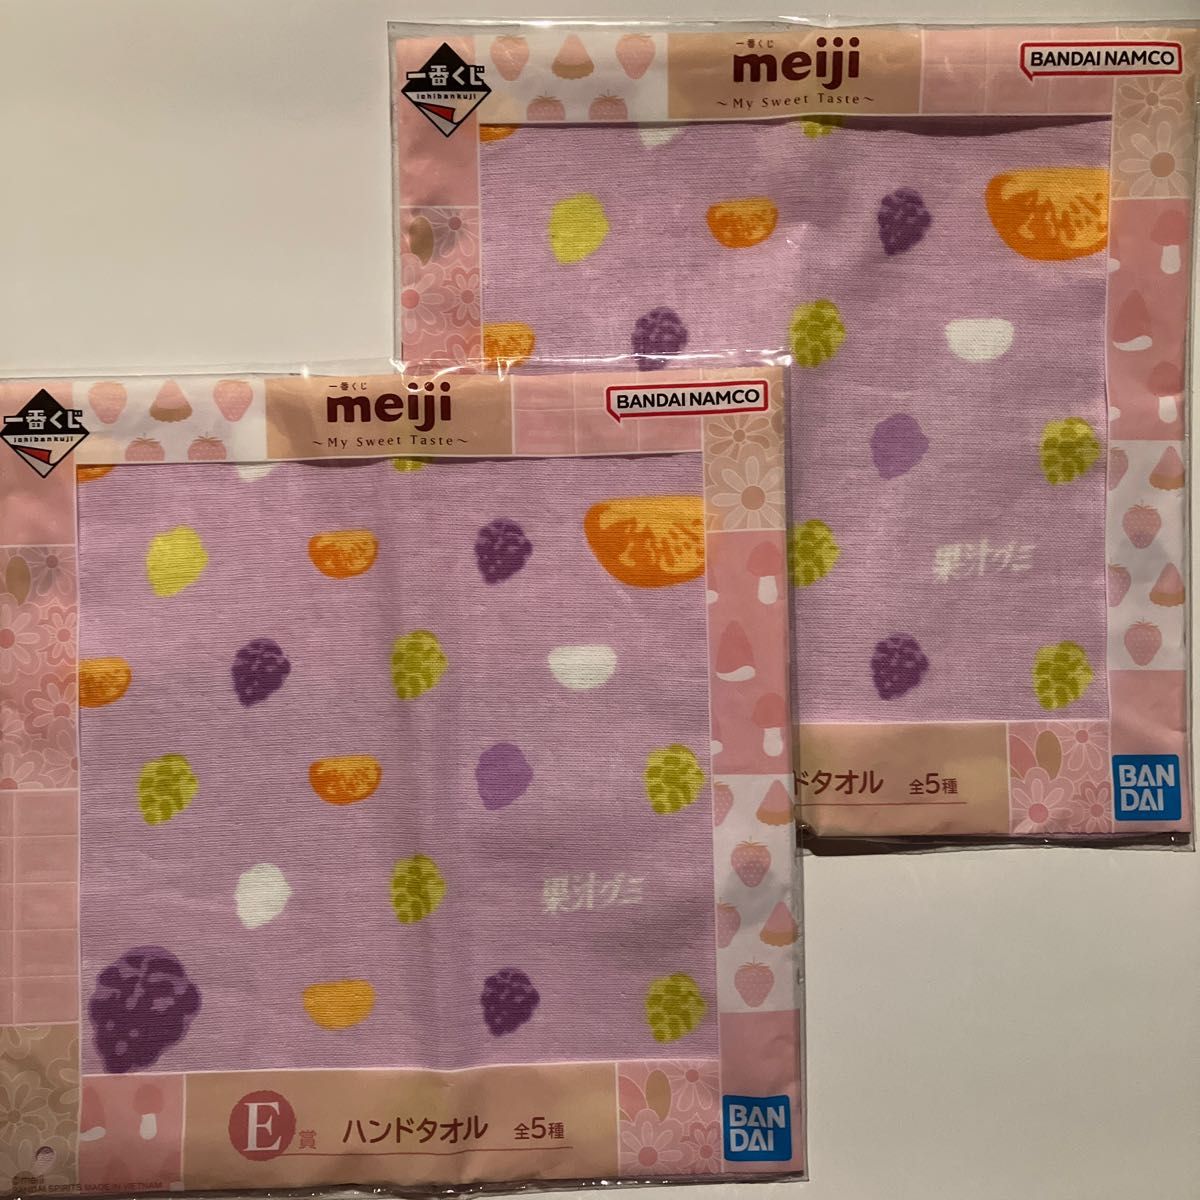 新品 2枚セット ハンドタオル 果汁グミ meiji 綿100% ガーゼハンカチ きれいな葡萄色 グミの模様 フルーツグミ柄